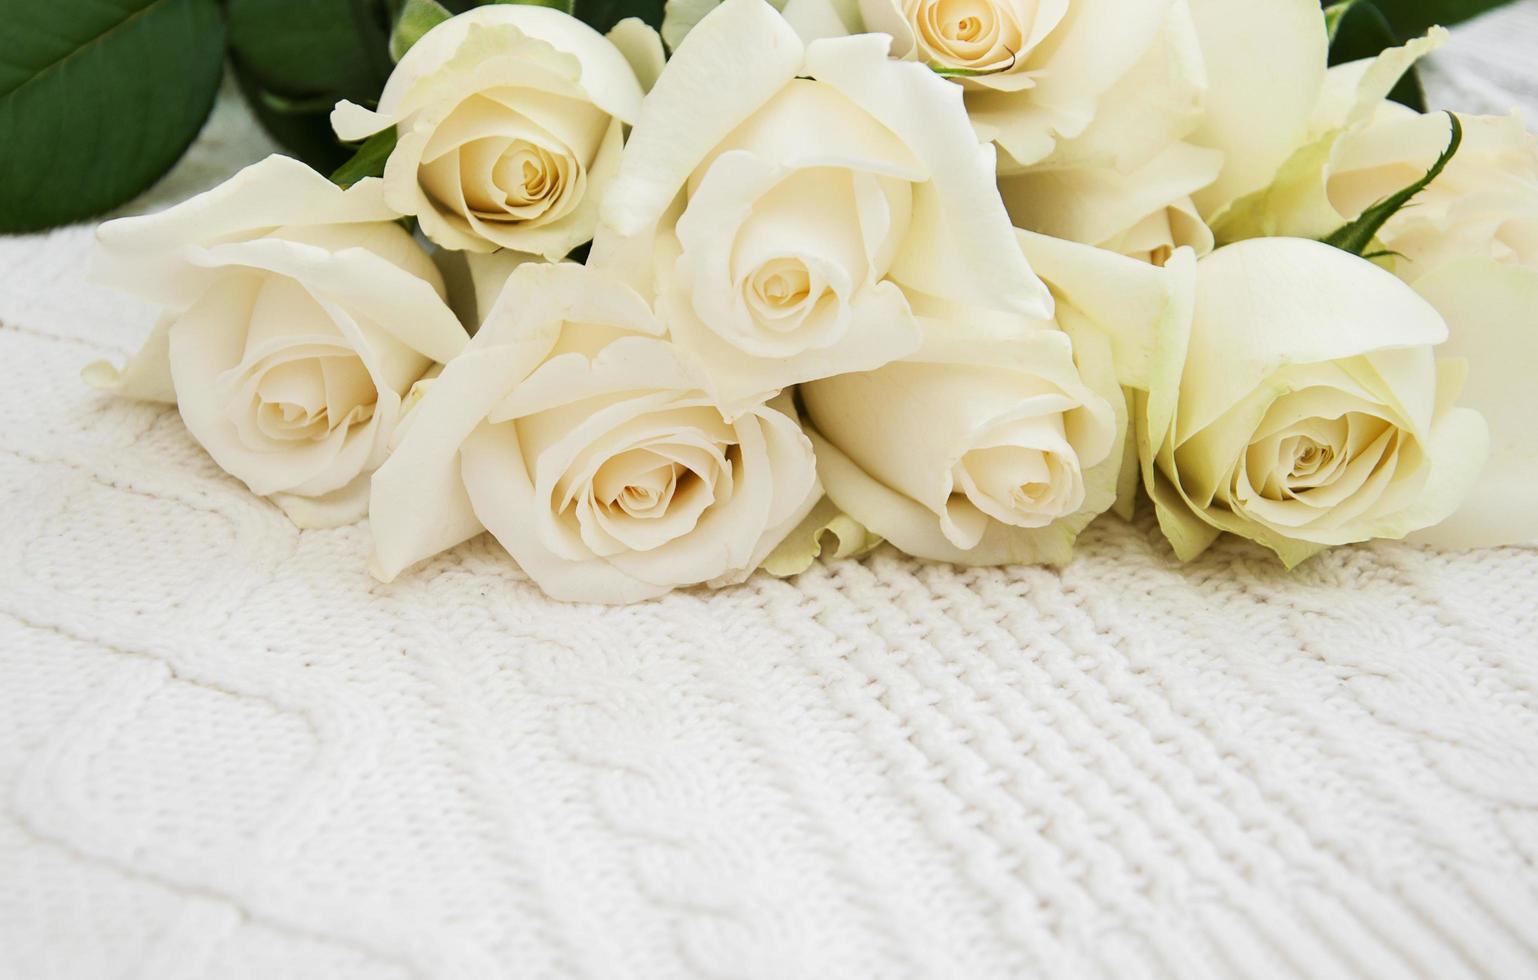 roses sur un fond blanc tricoté photo